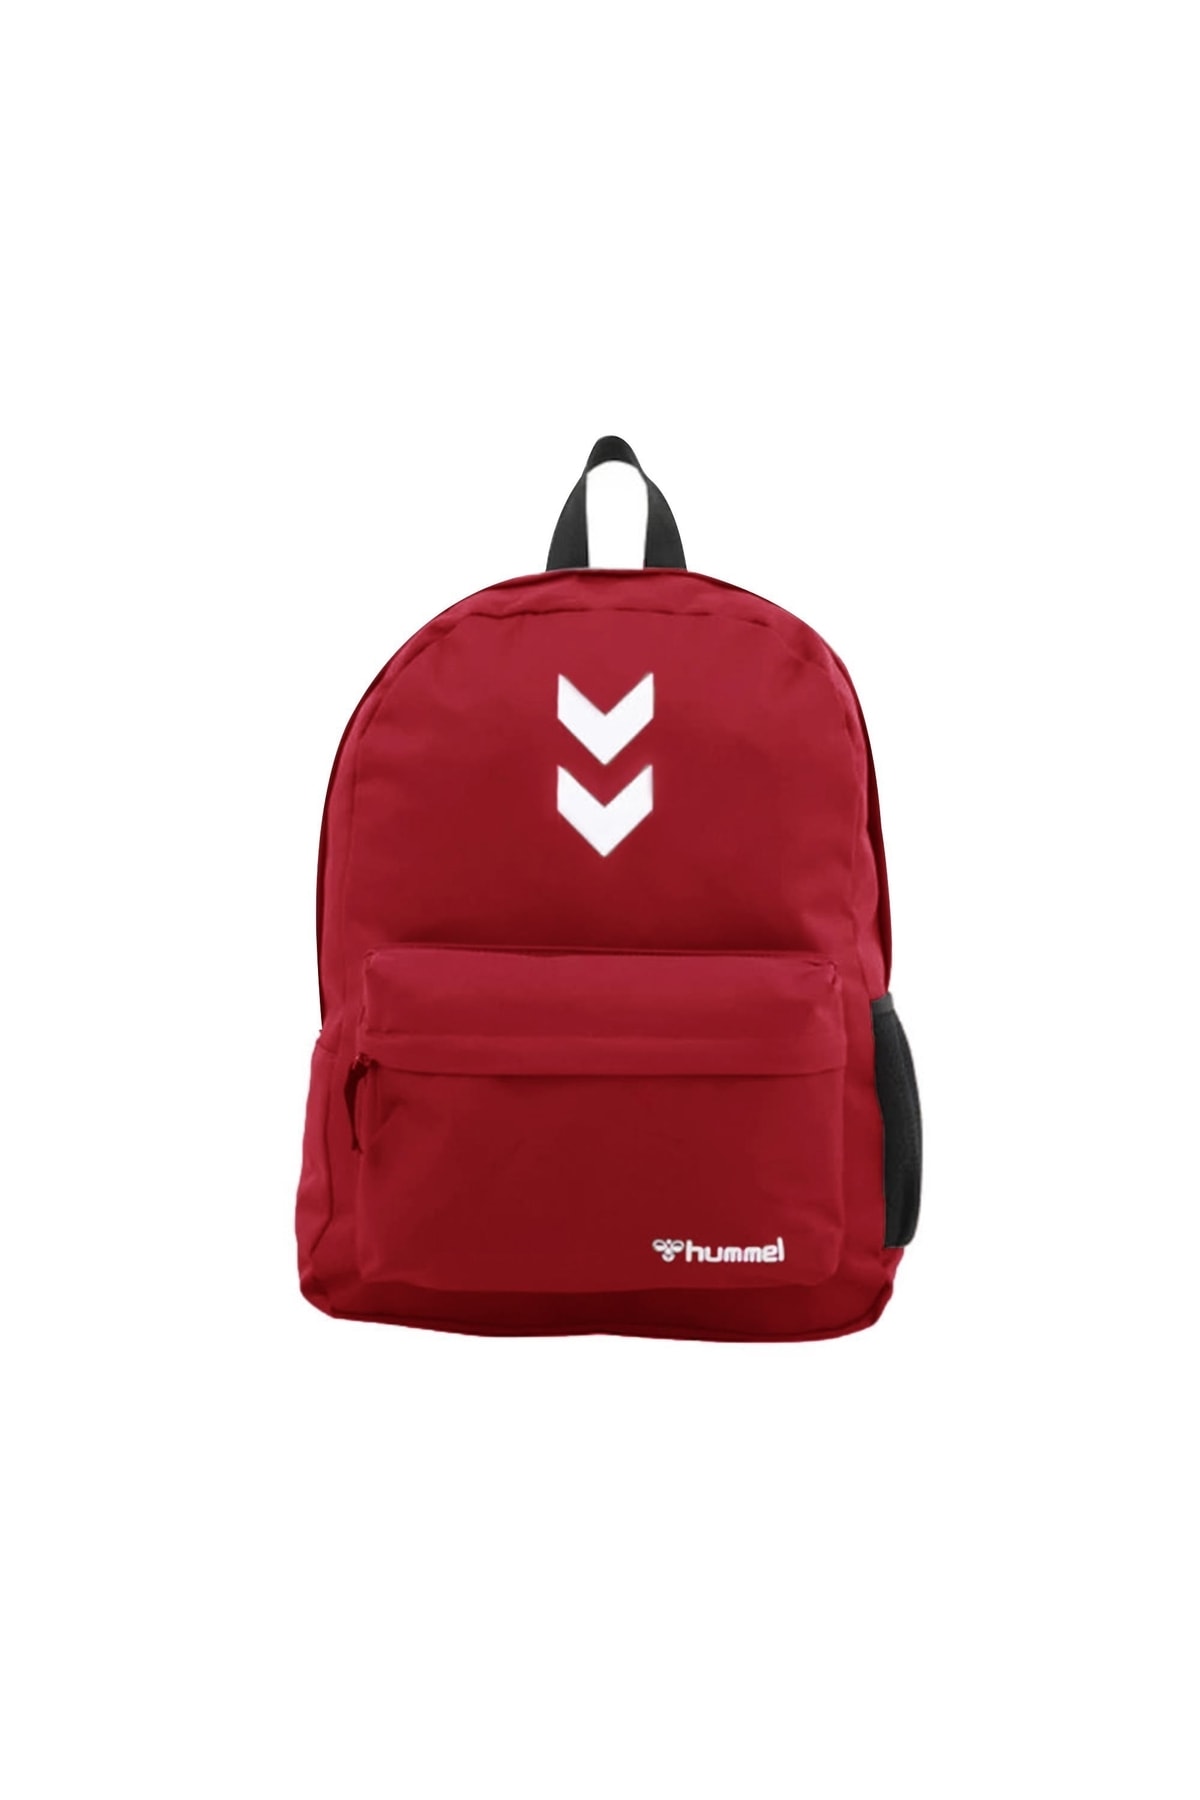 hummel Darrel Bag Pack Backpack 980152